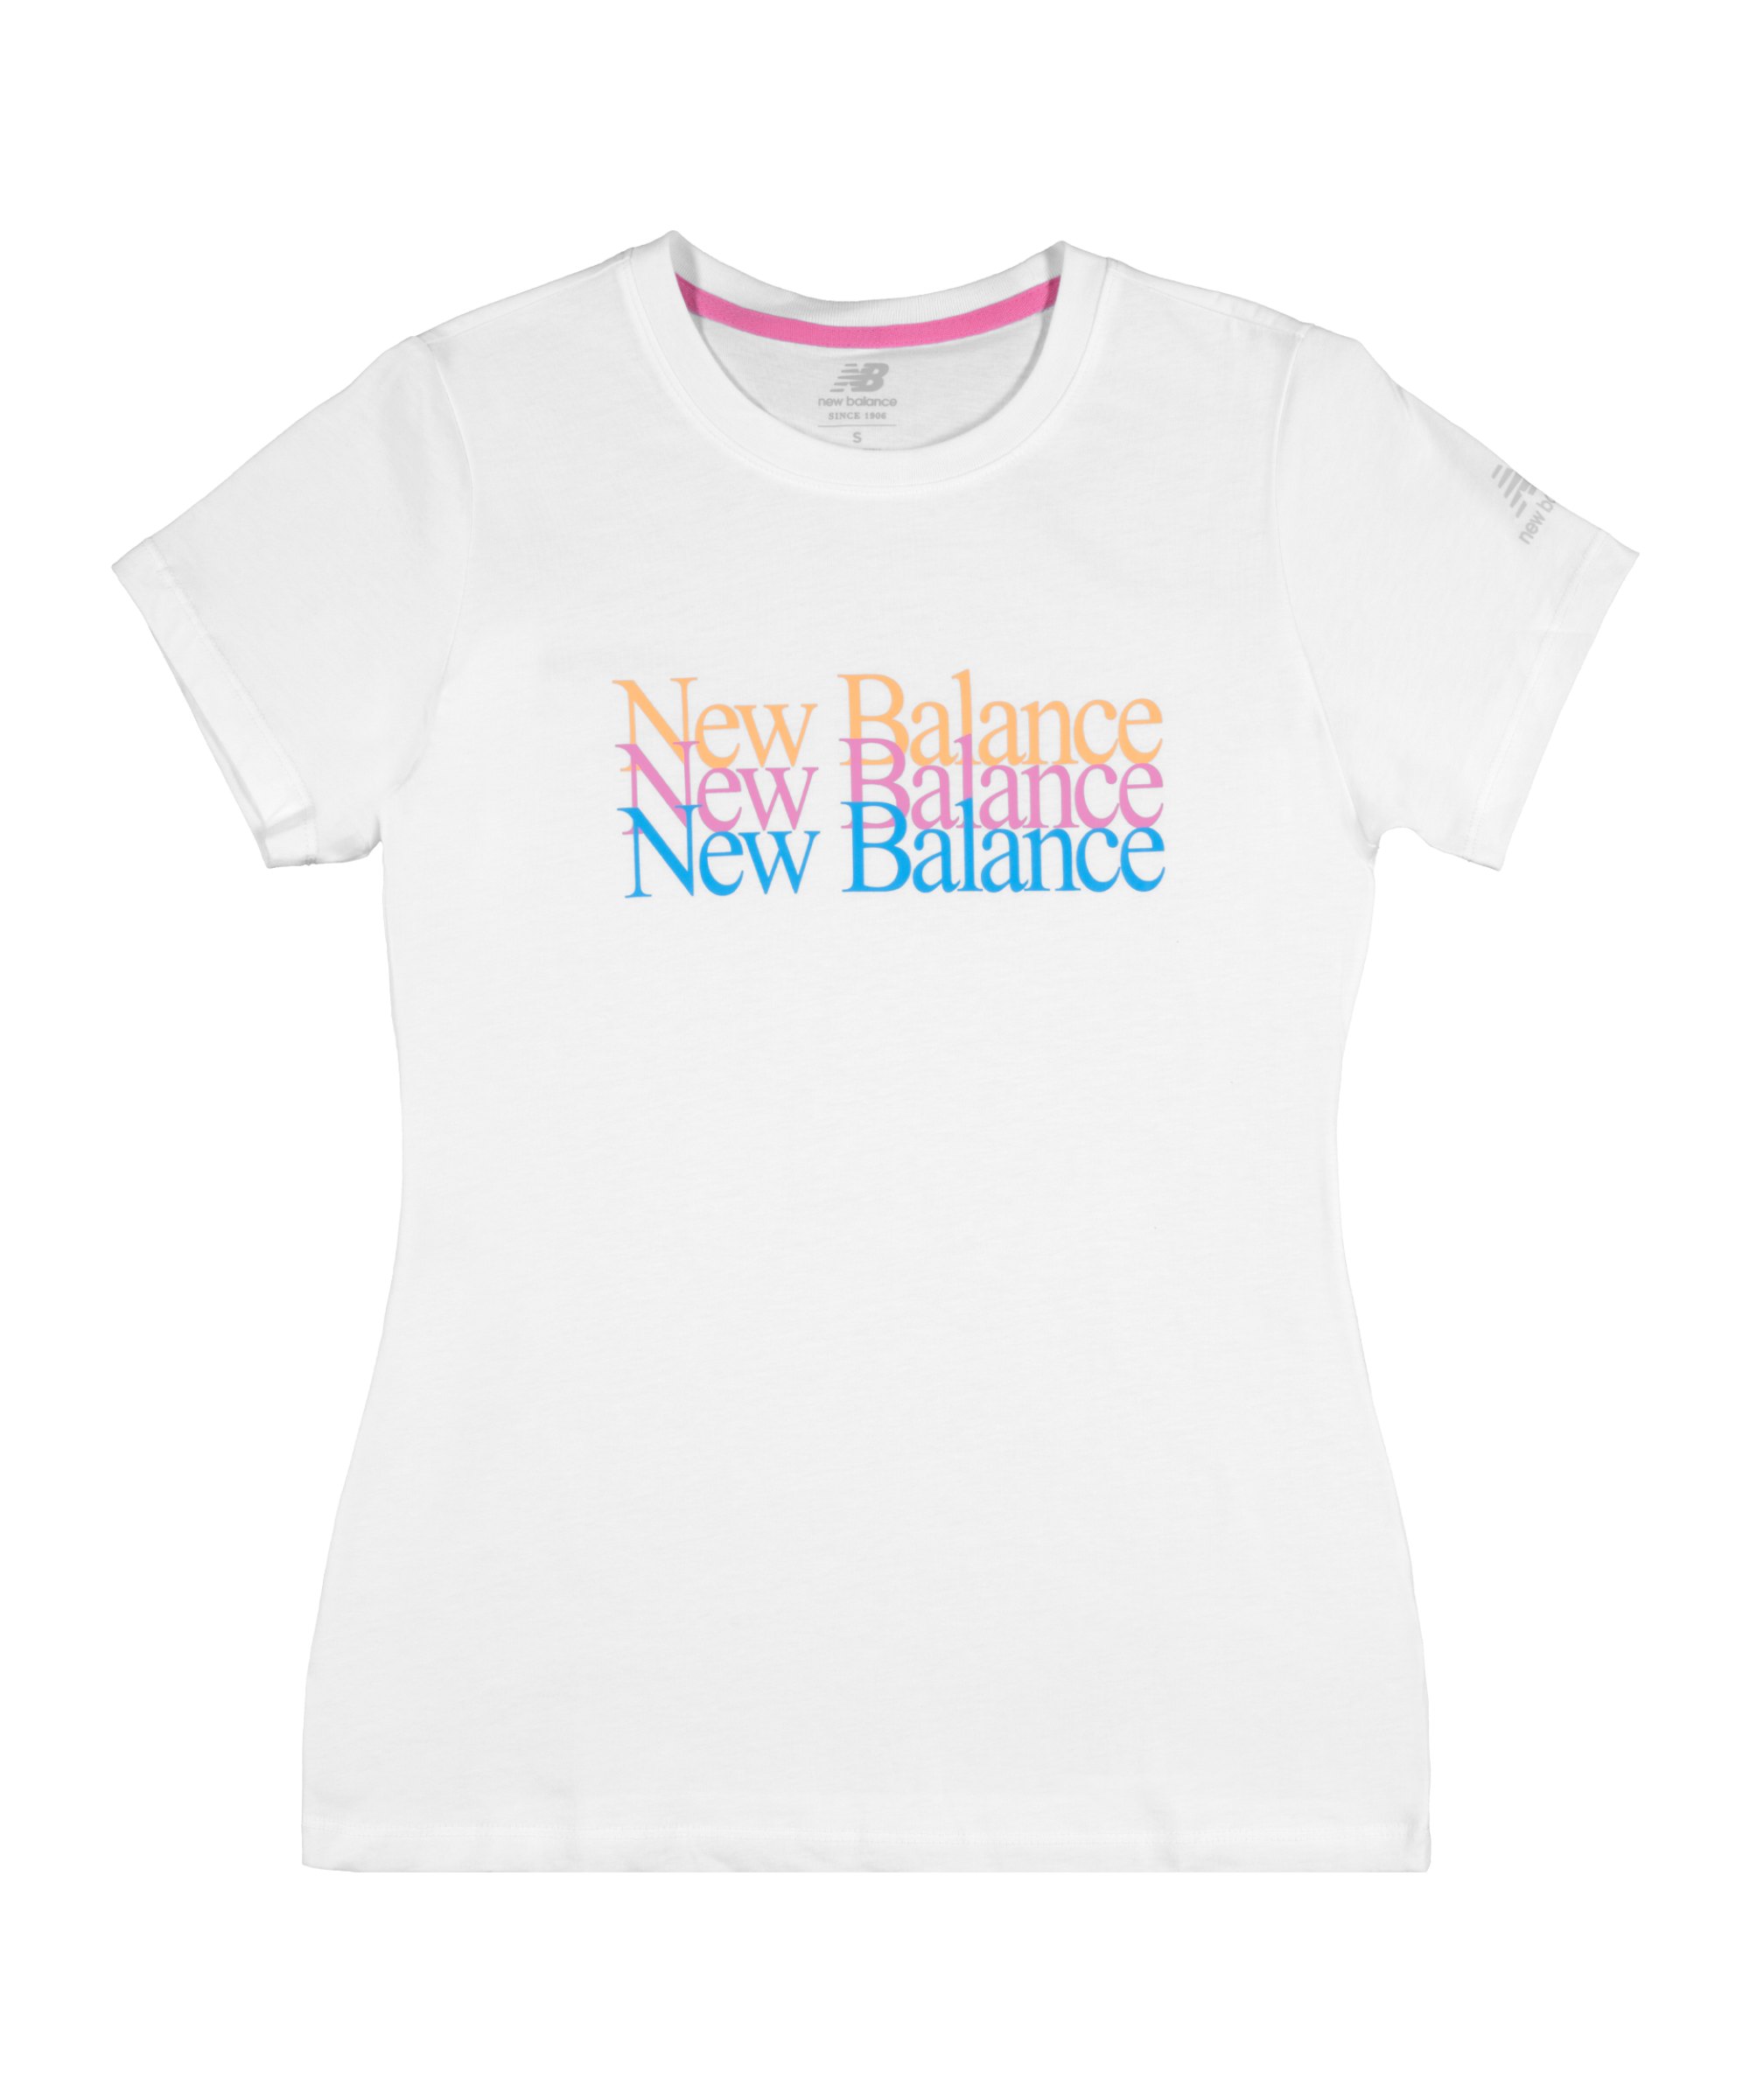 New Balance Ess Celebrate T-Shirt Damen Weiss FWT - weiss